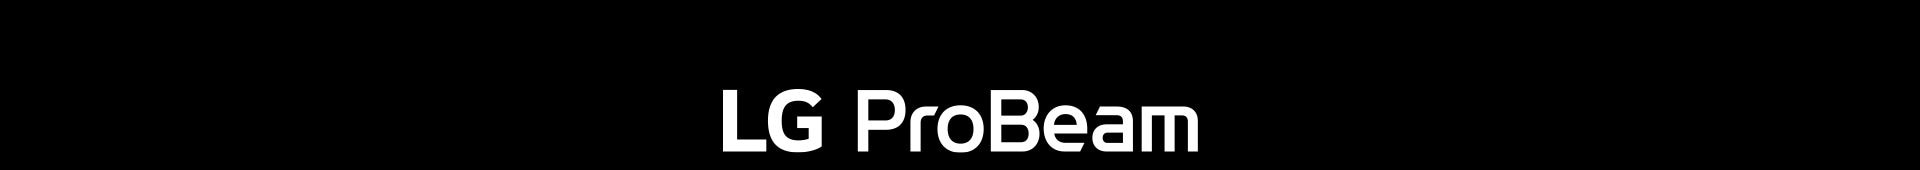 LG ProBeam logo.